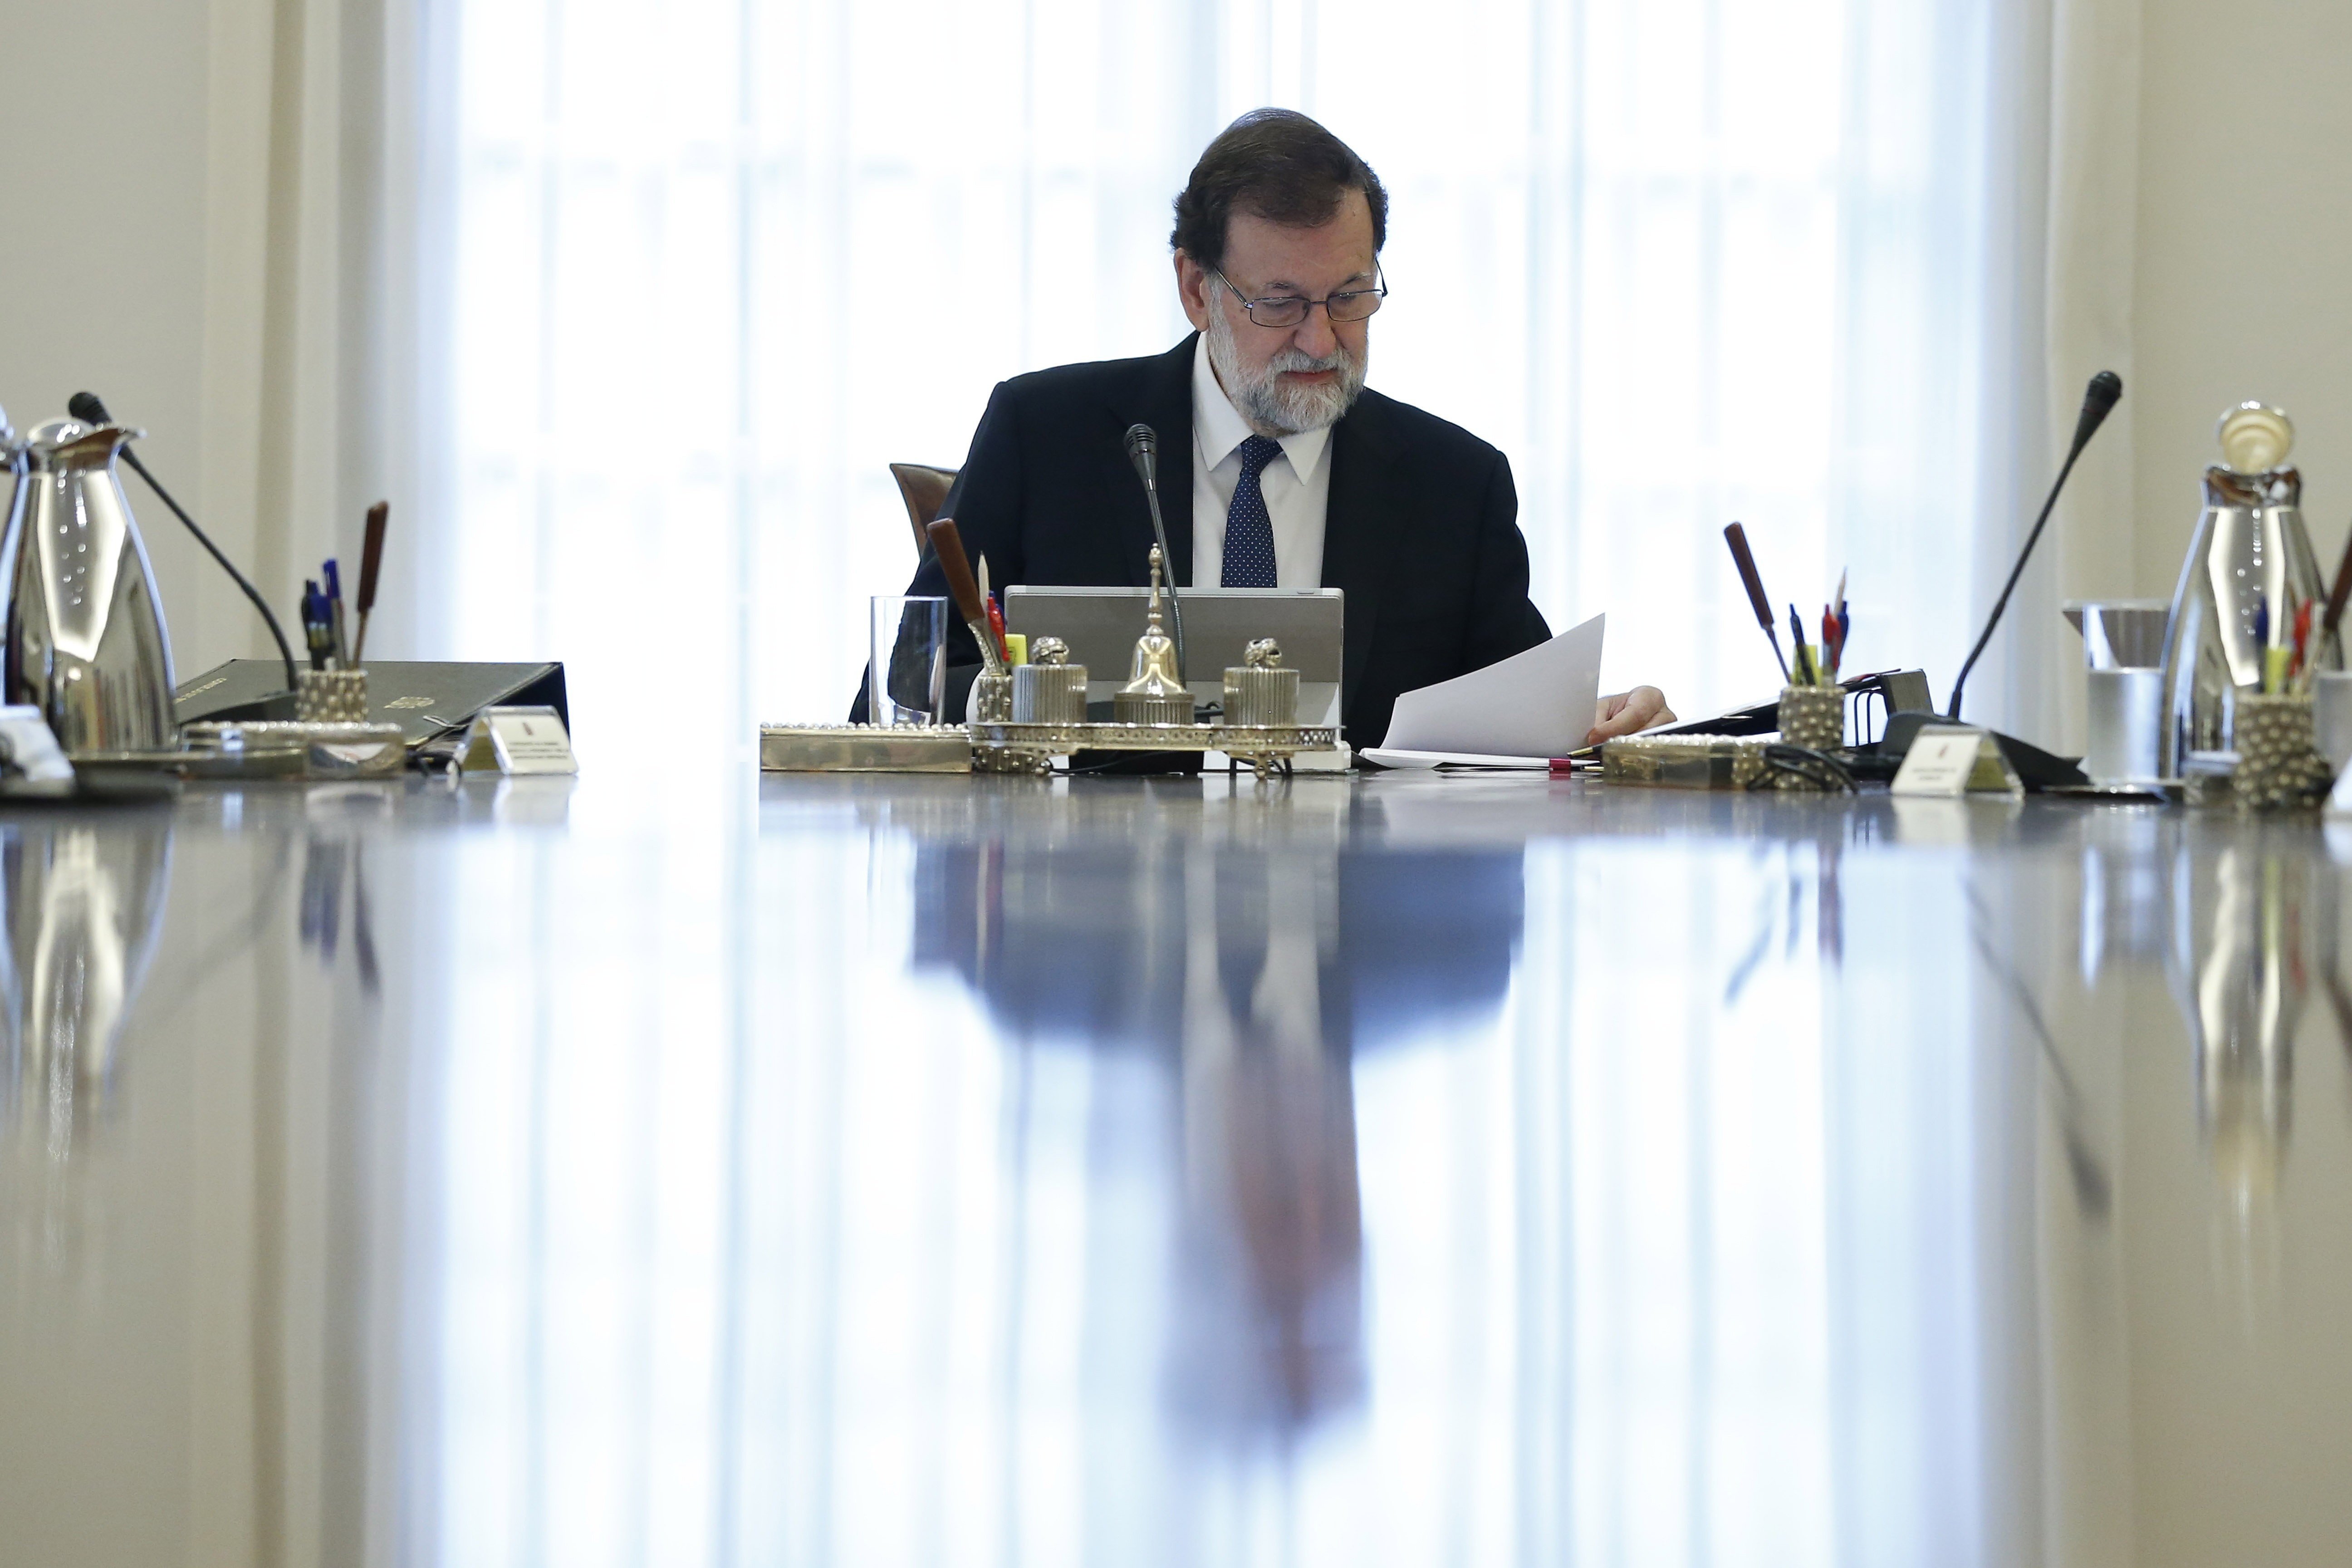 Treballadors del Govern fulminats pel 155 batallen en solitari al Suprem contra Rajoy